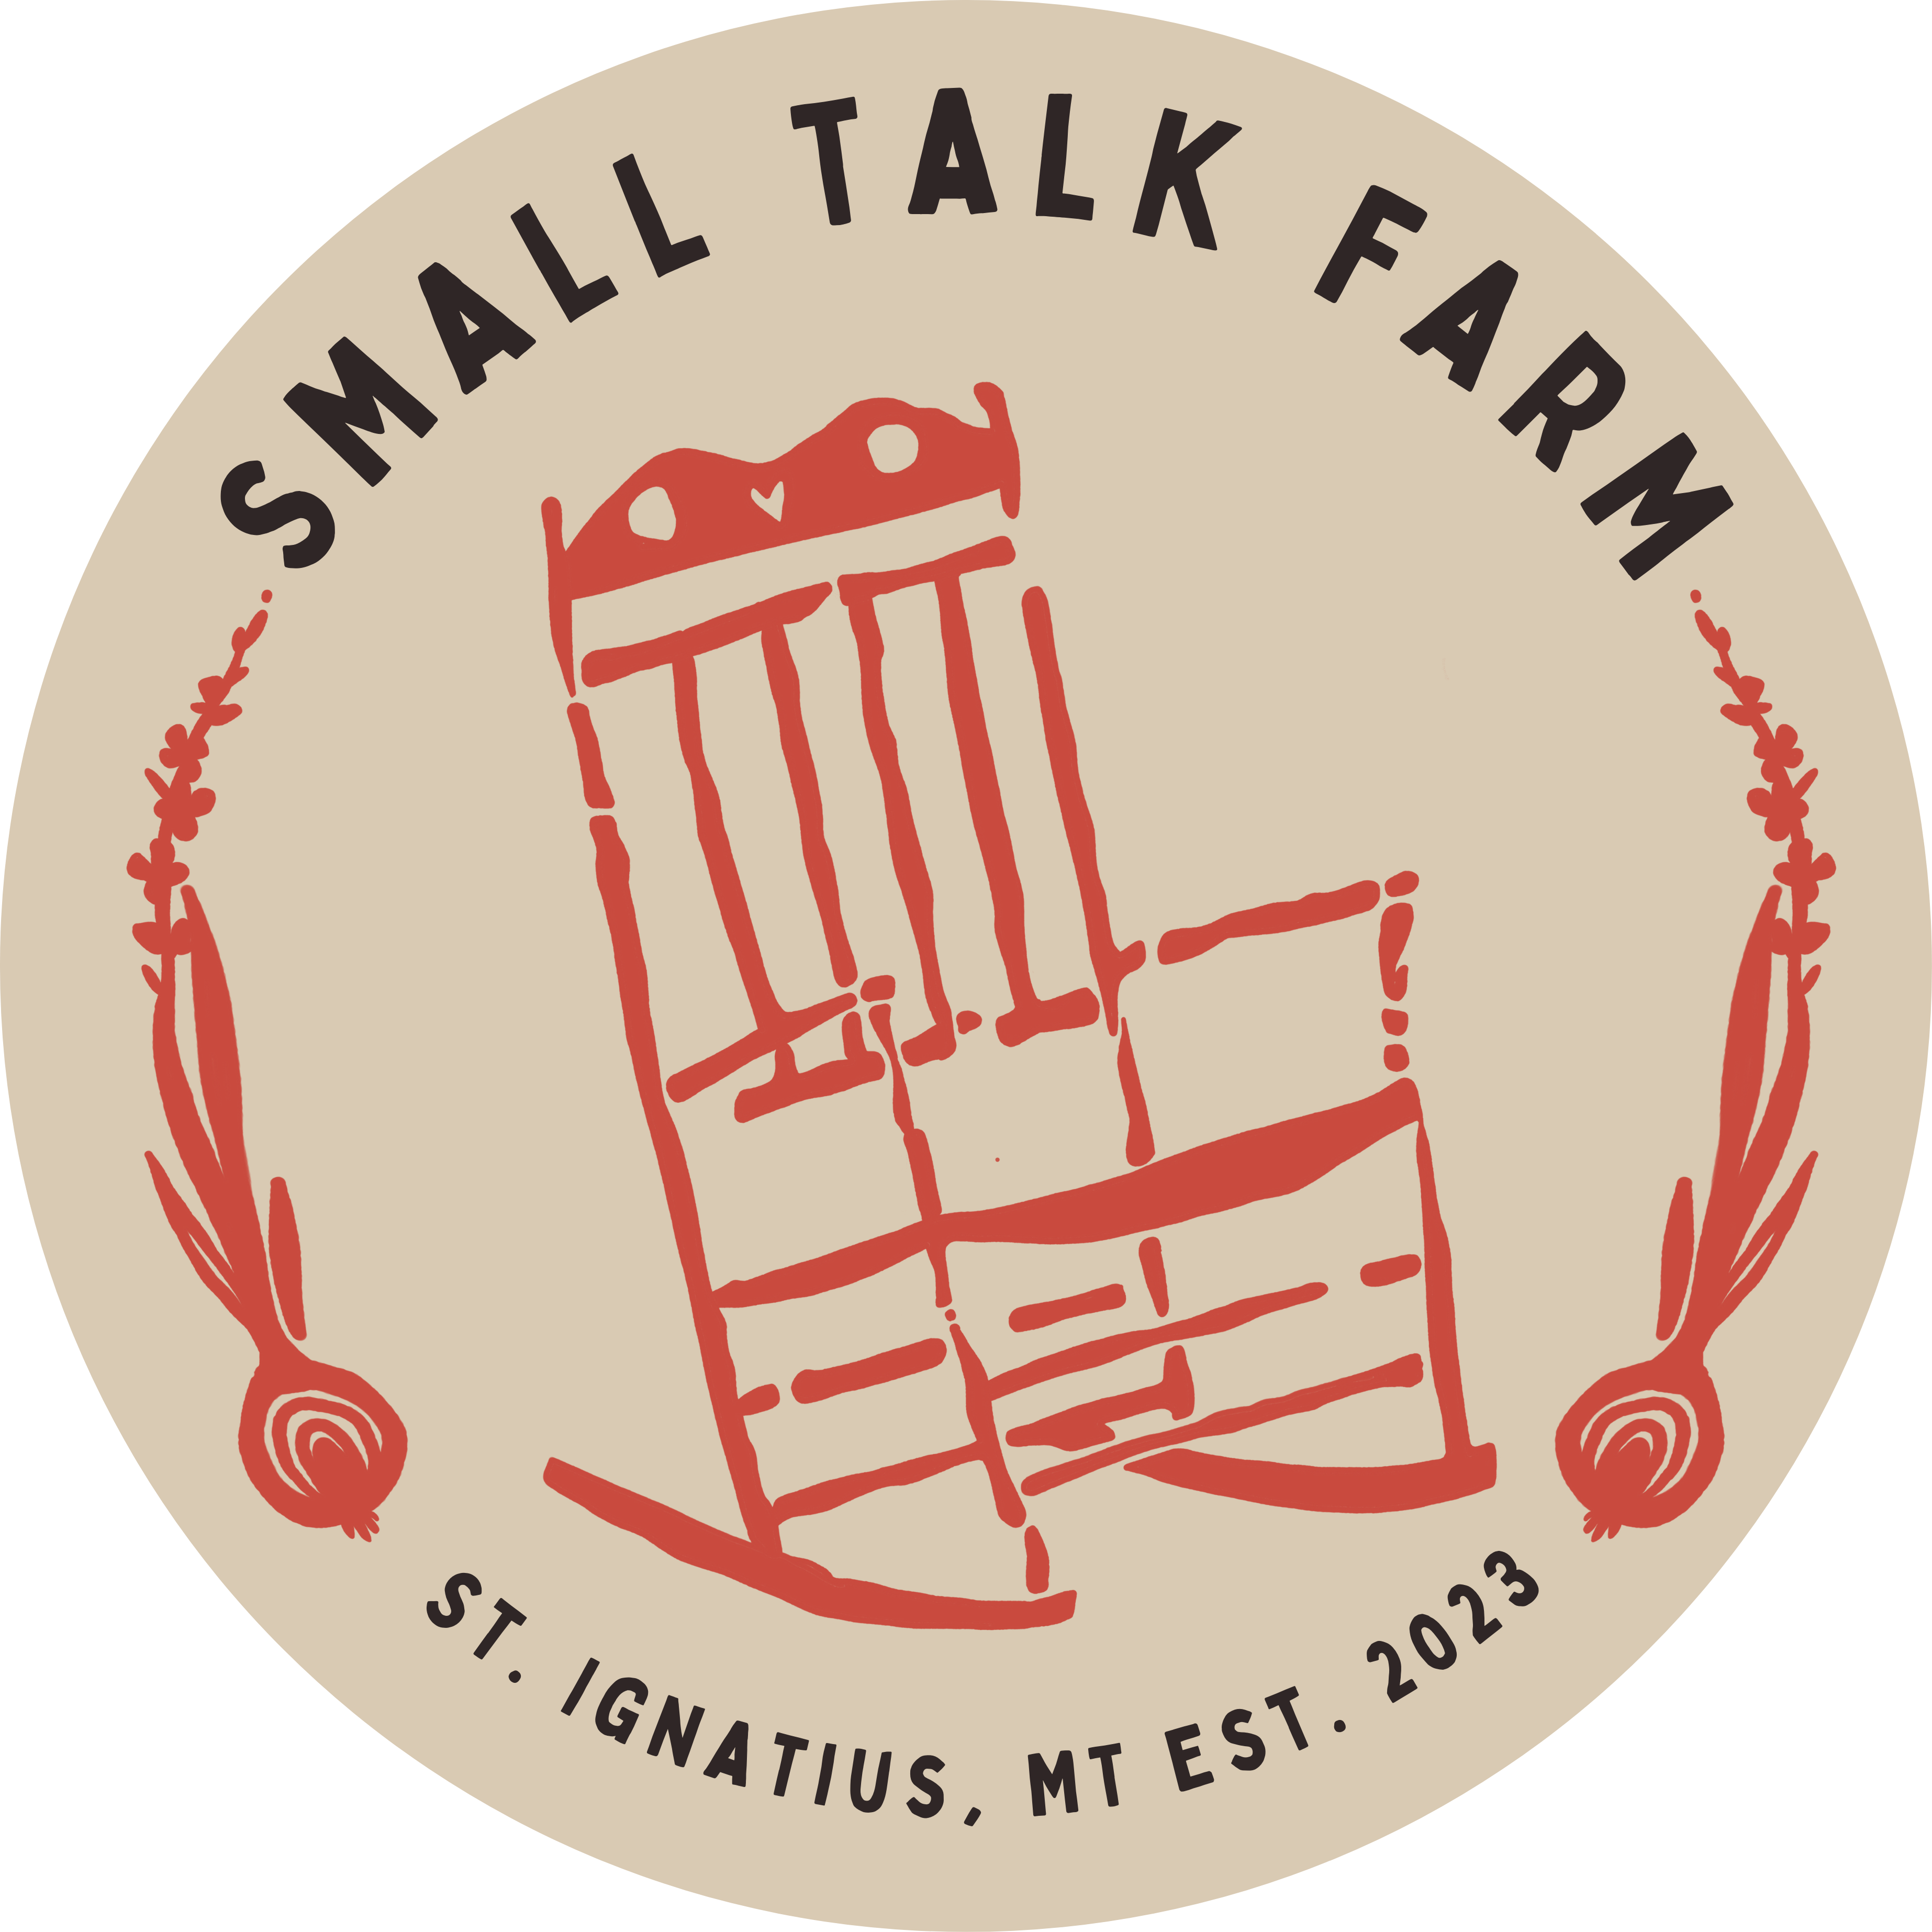 Small Talk Farm